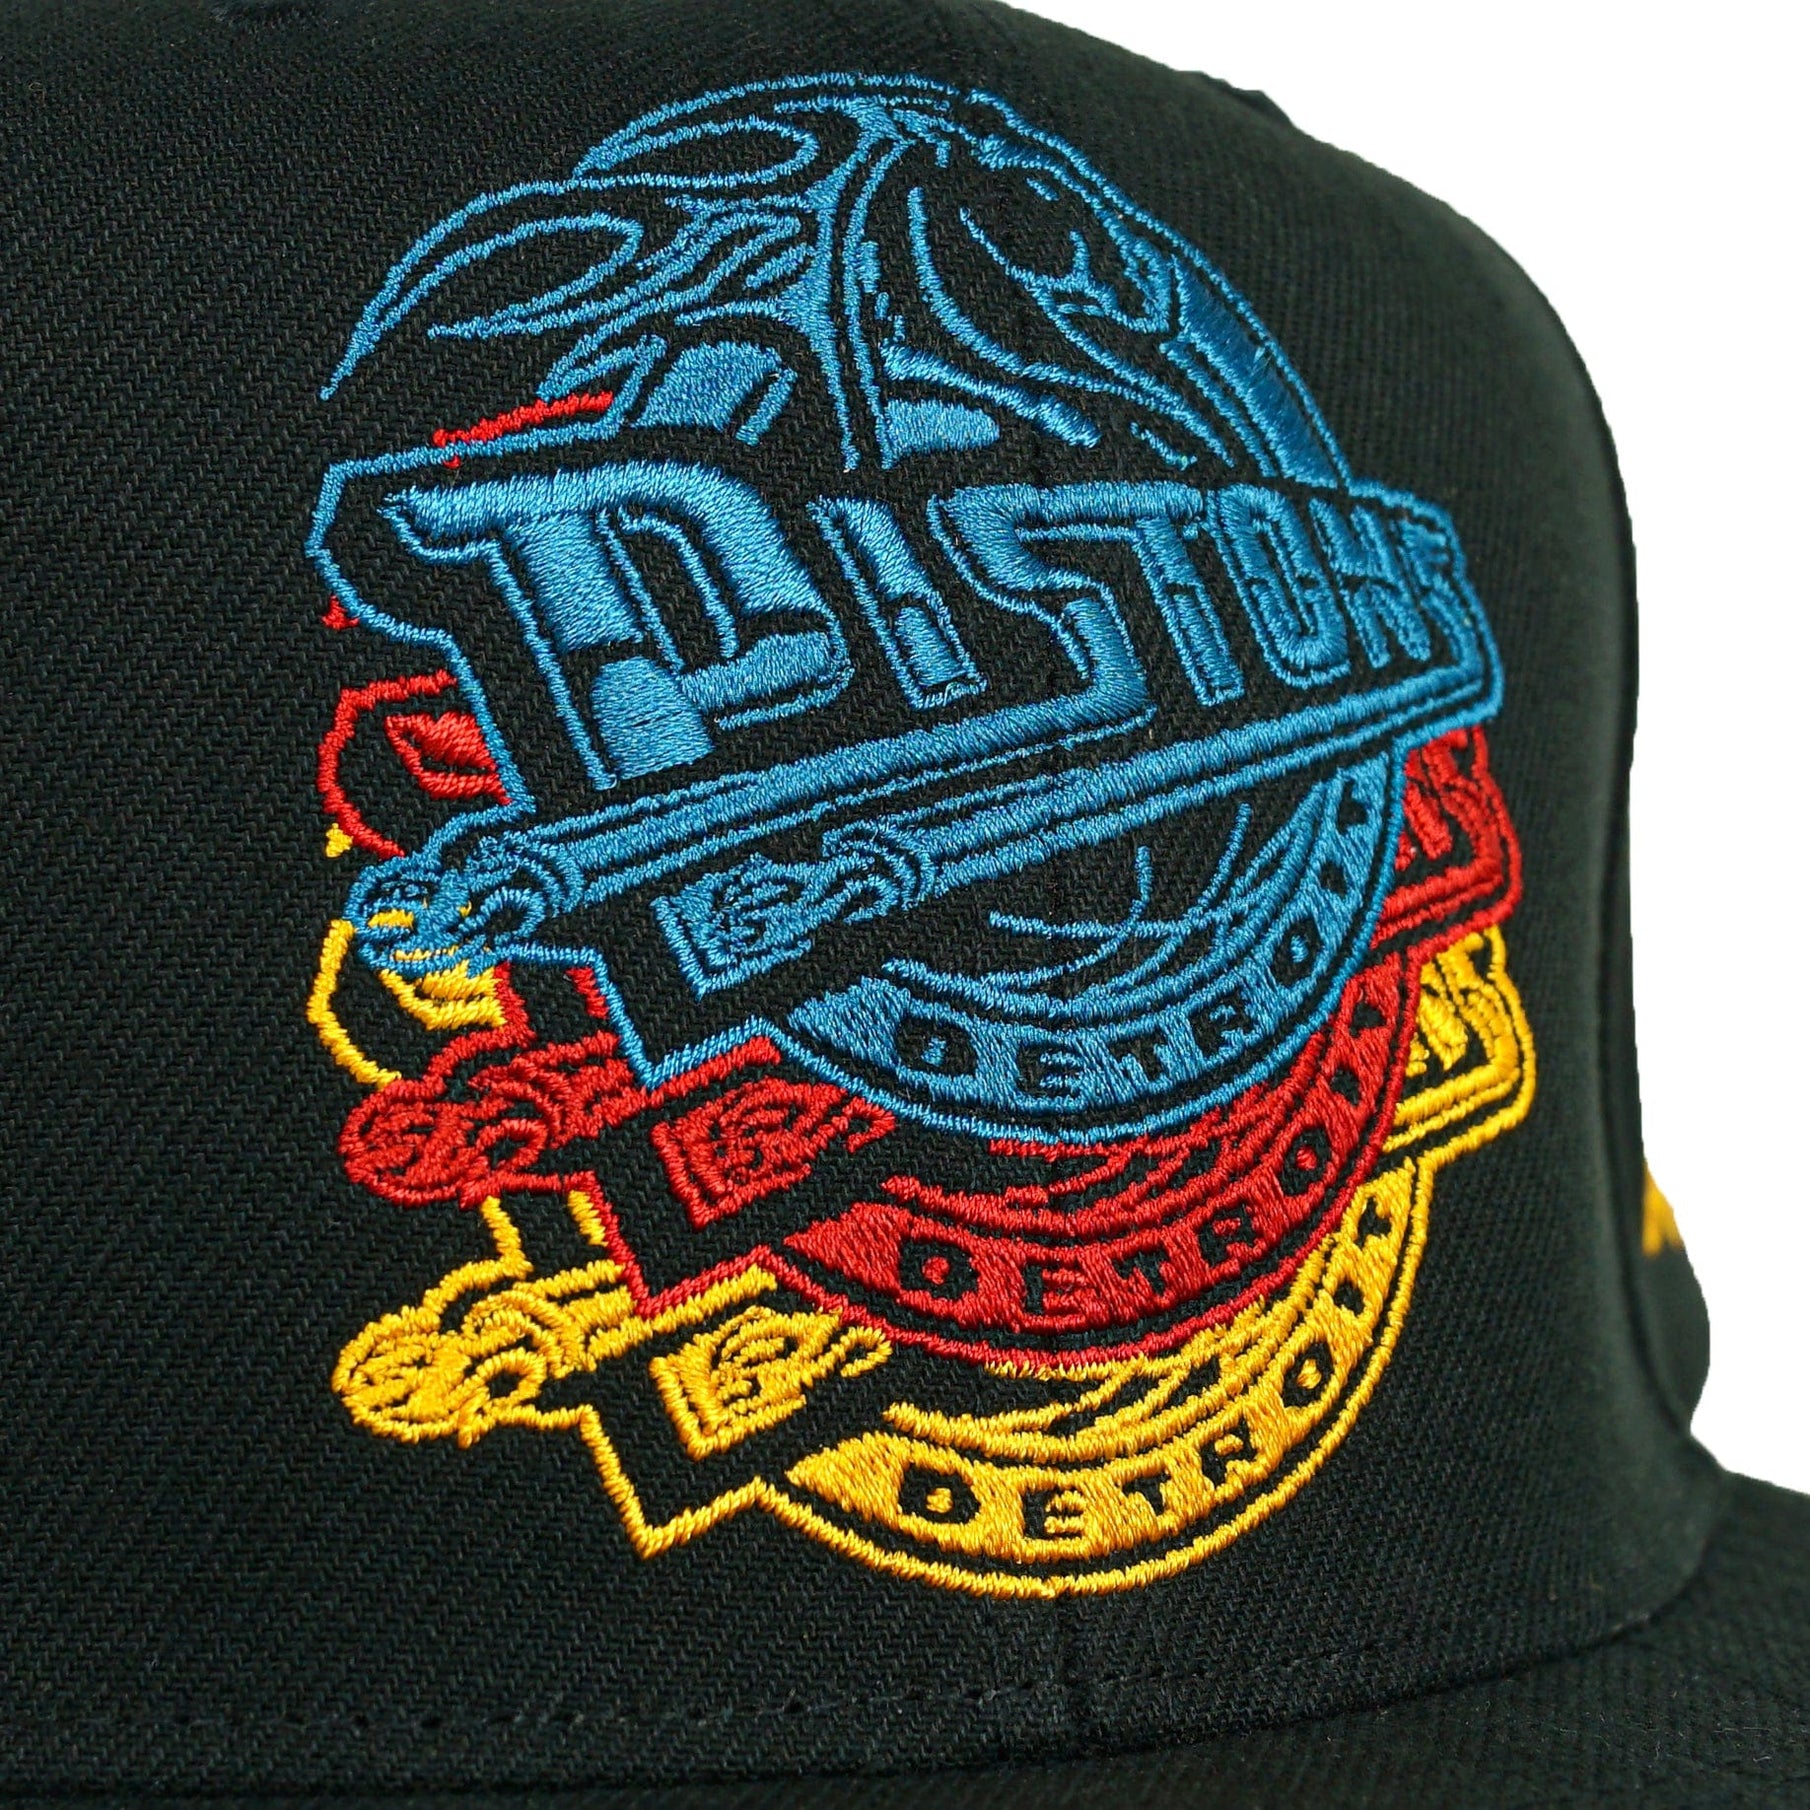 Detroit Pistons Drop It HWC Snapback Hat in black